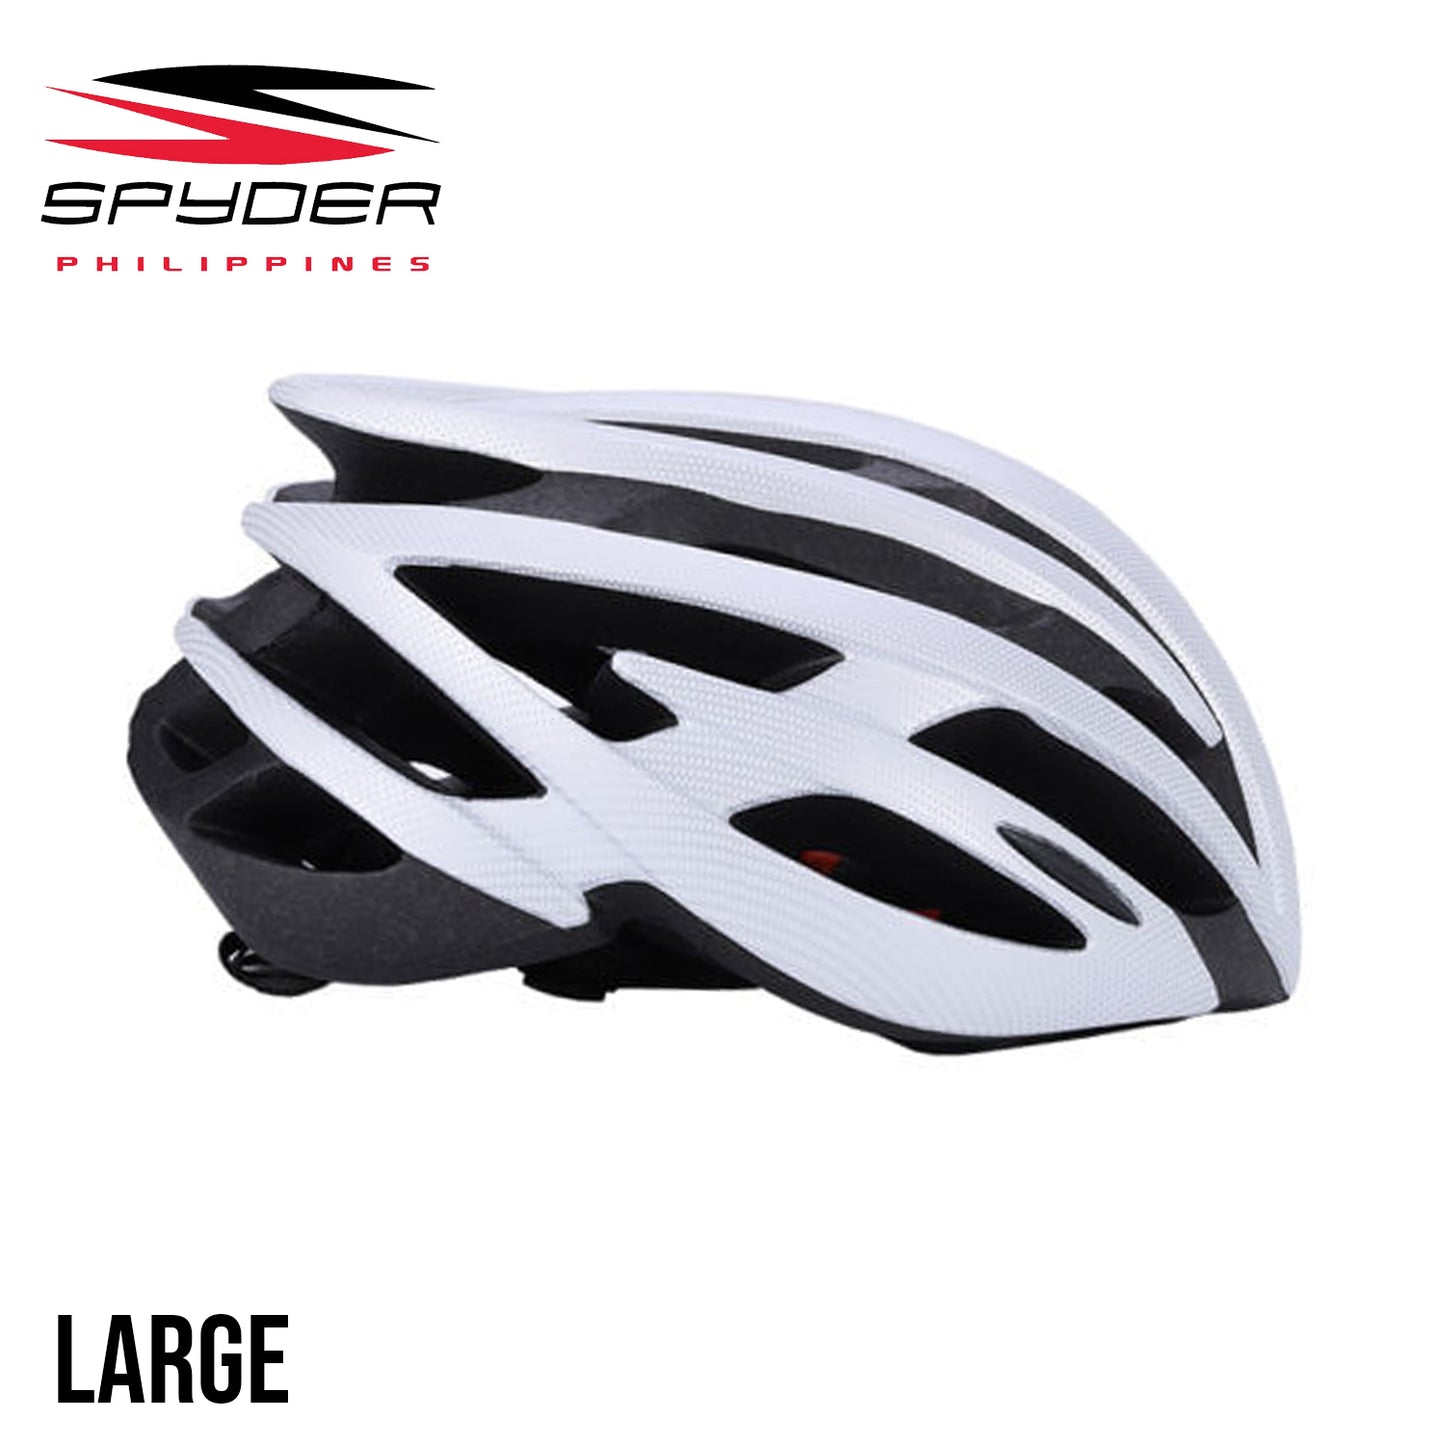 Spyder PHANTOM Bike Helmet for Road - White/Black